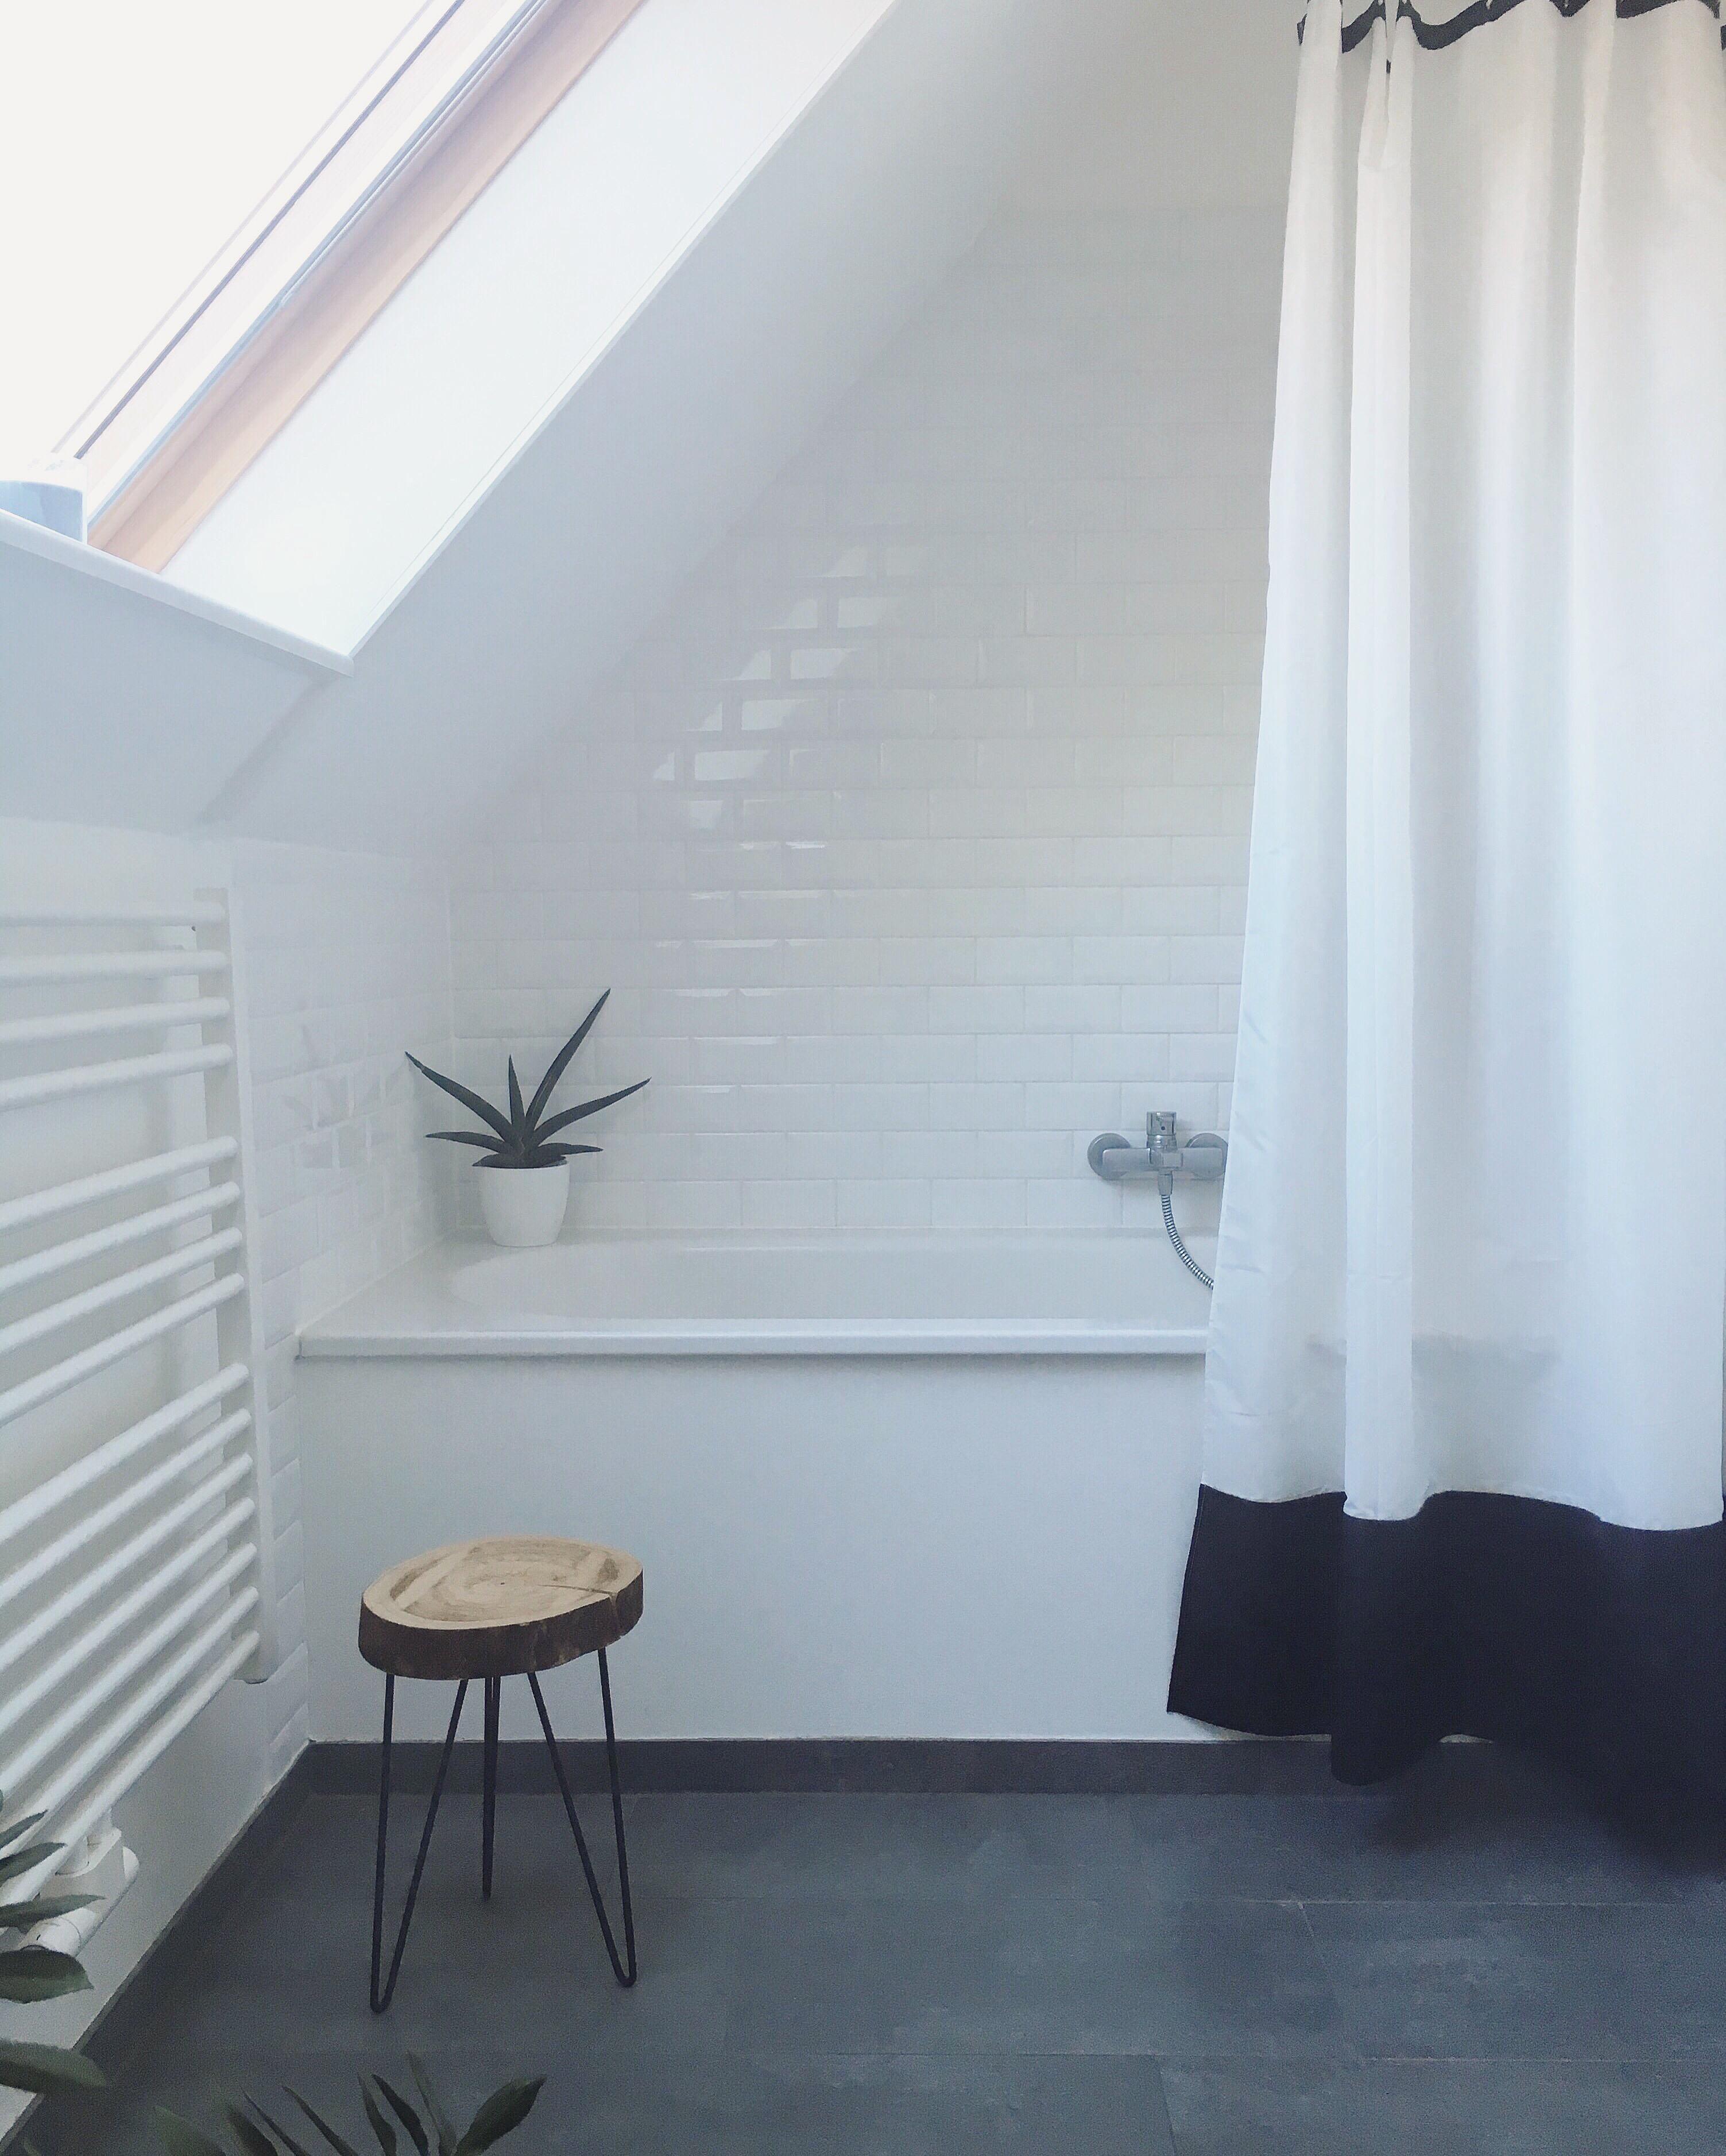 Badezimmer #fliesenliebe #blackandwhite #minimalism